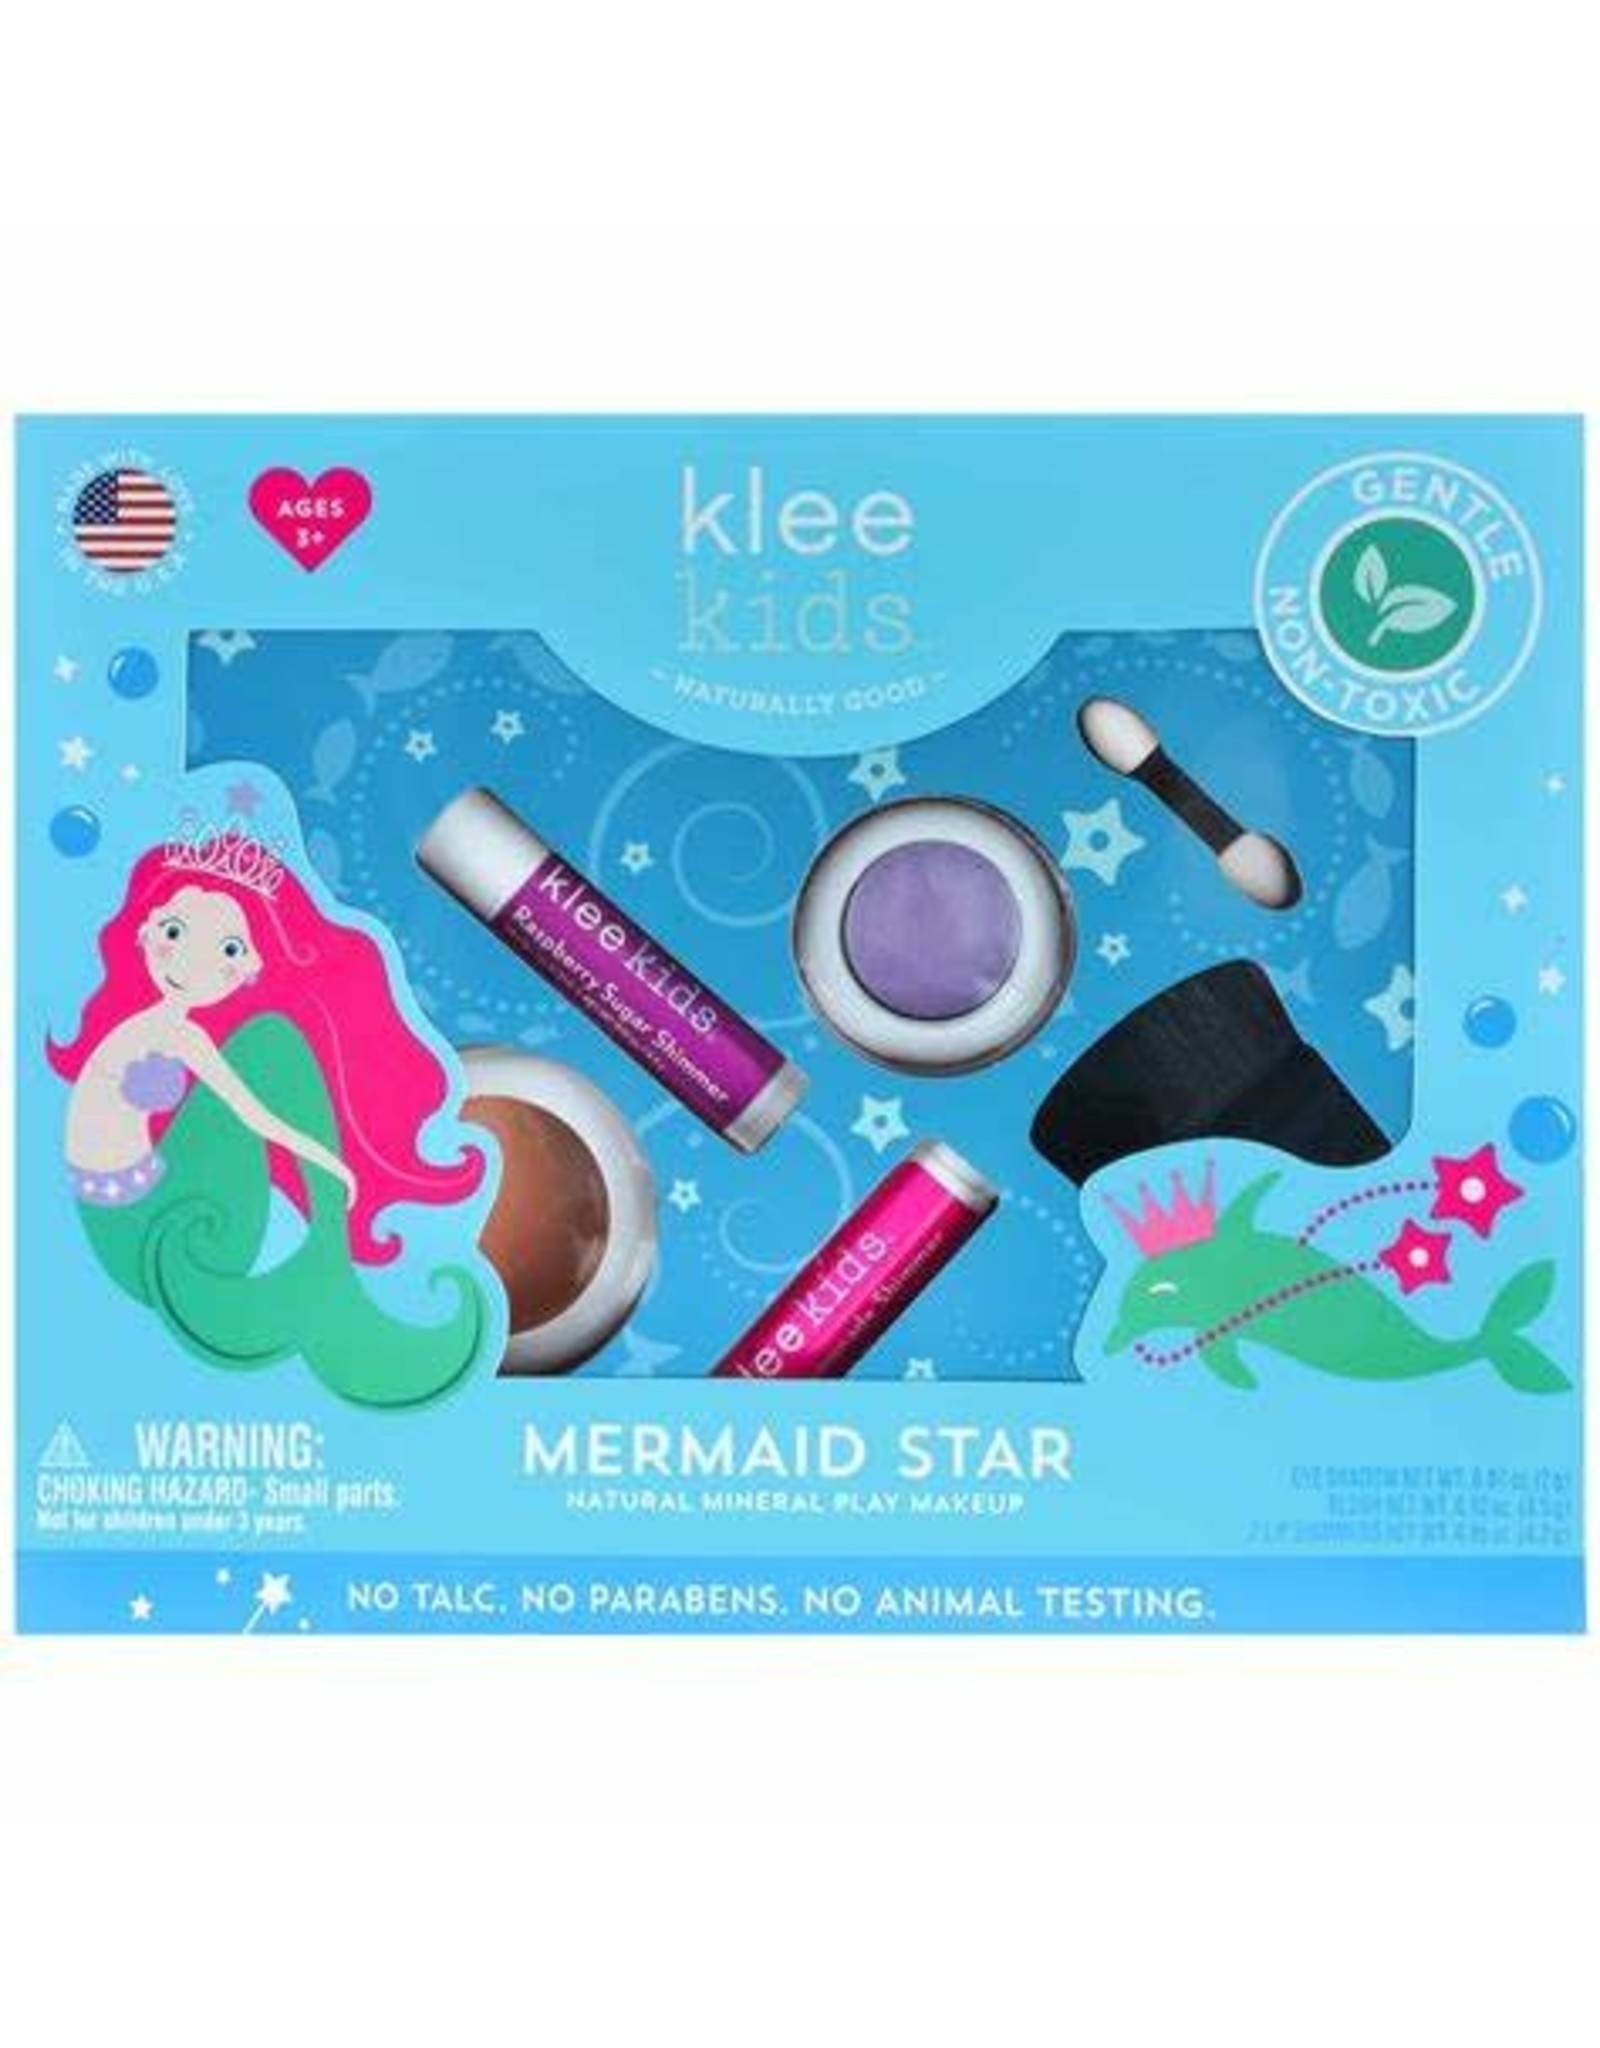 Natural Mineral Play Makeup Kit - Mermaid Star